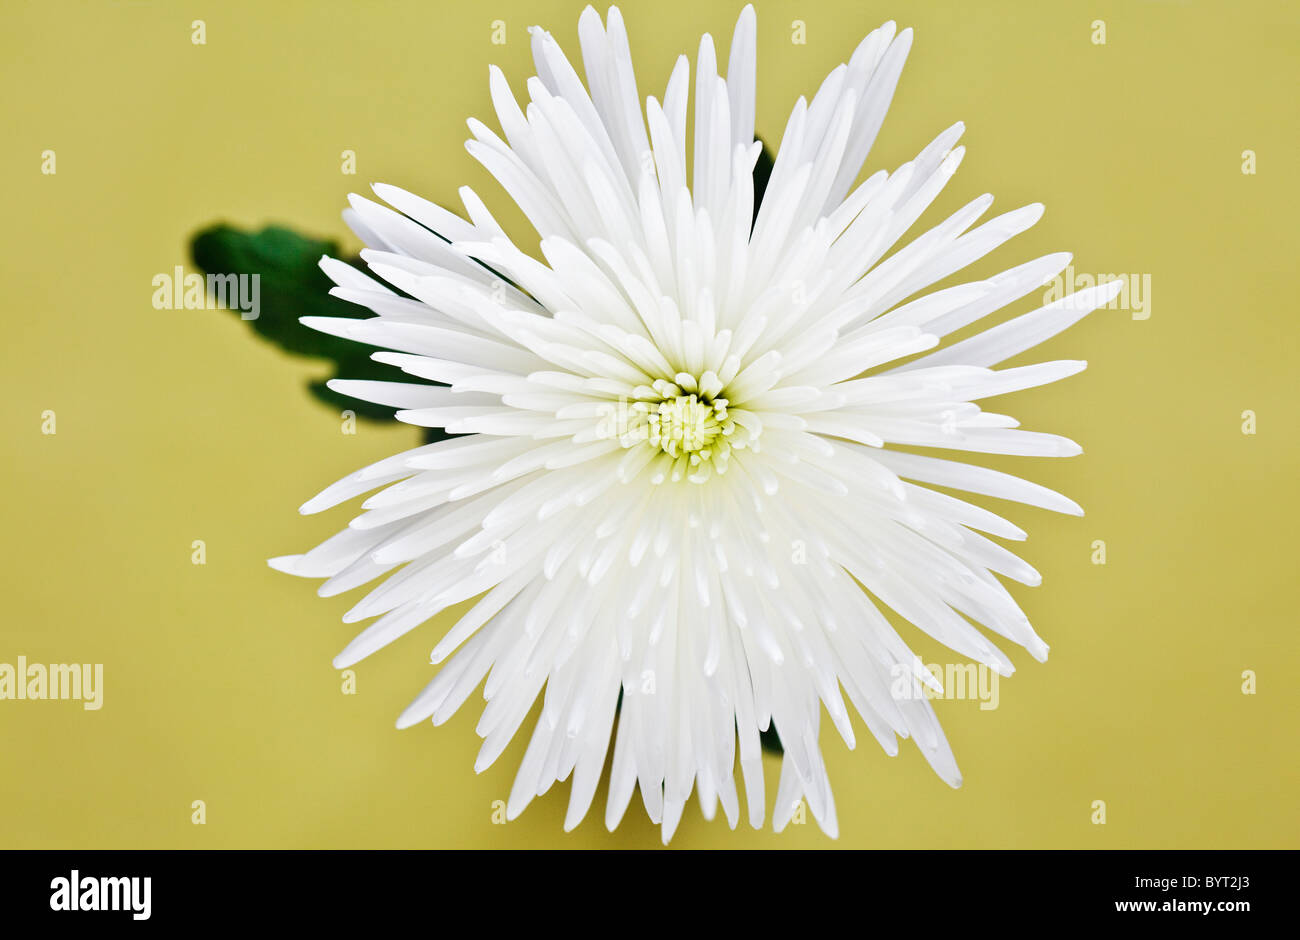 White Chrysanthemum on yellow background Stock Photo